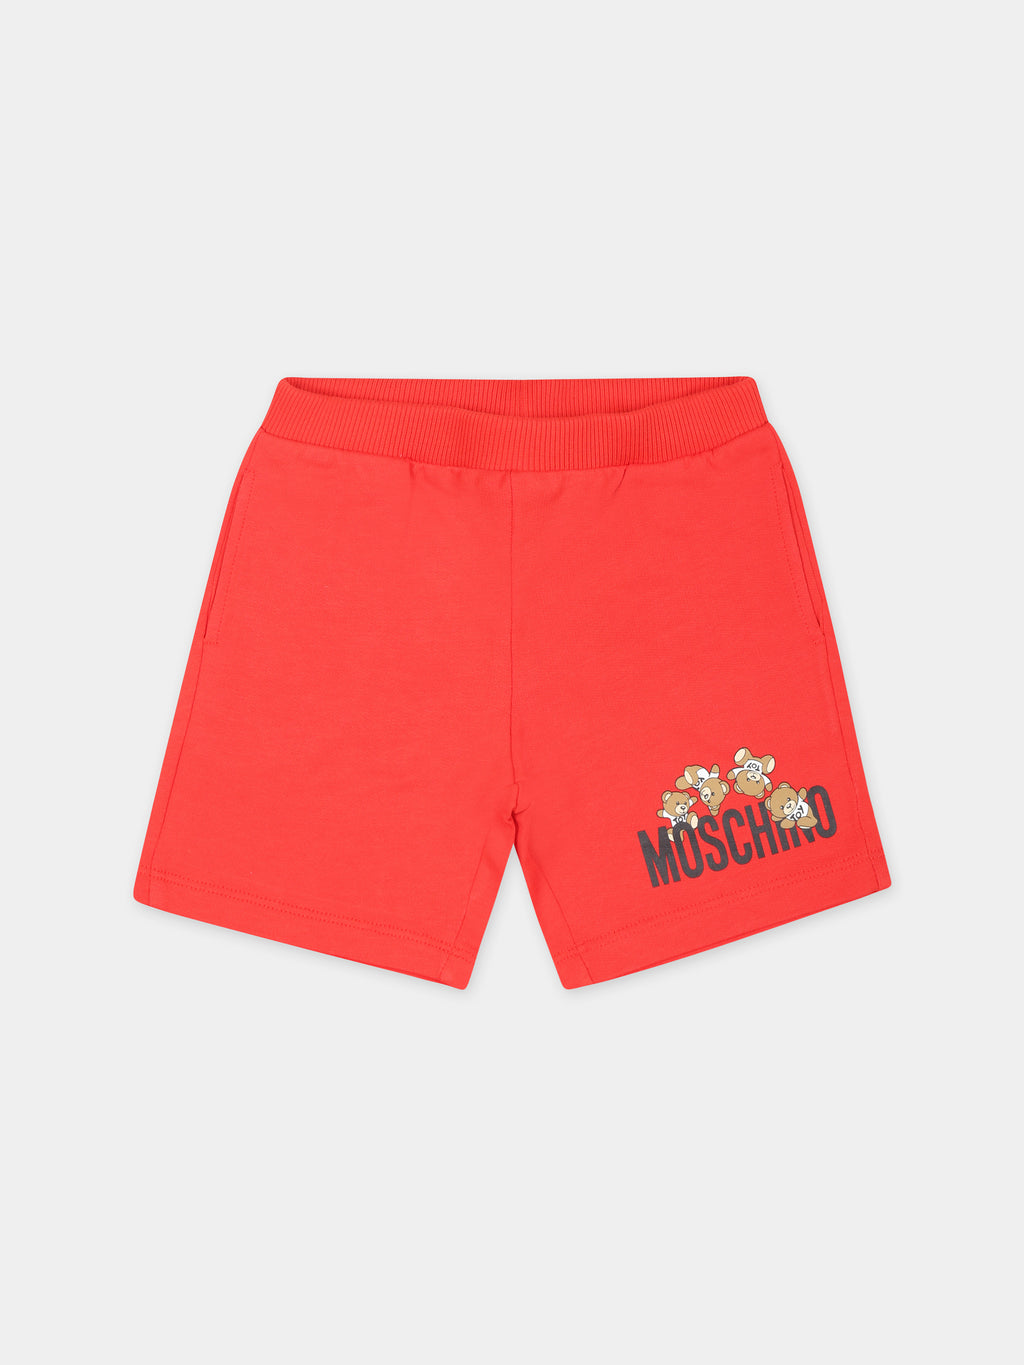 Shorts rossi per neonato con Teddy Bears e logo